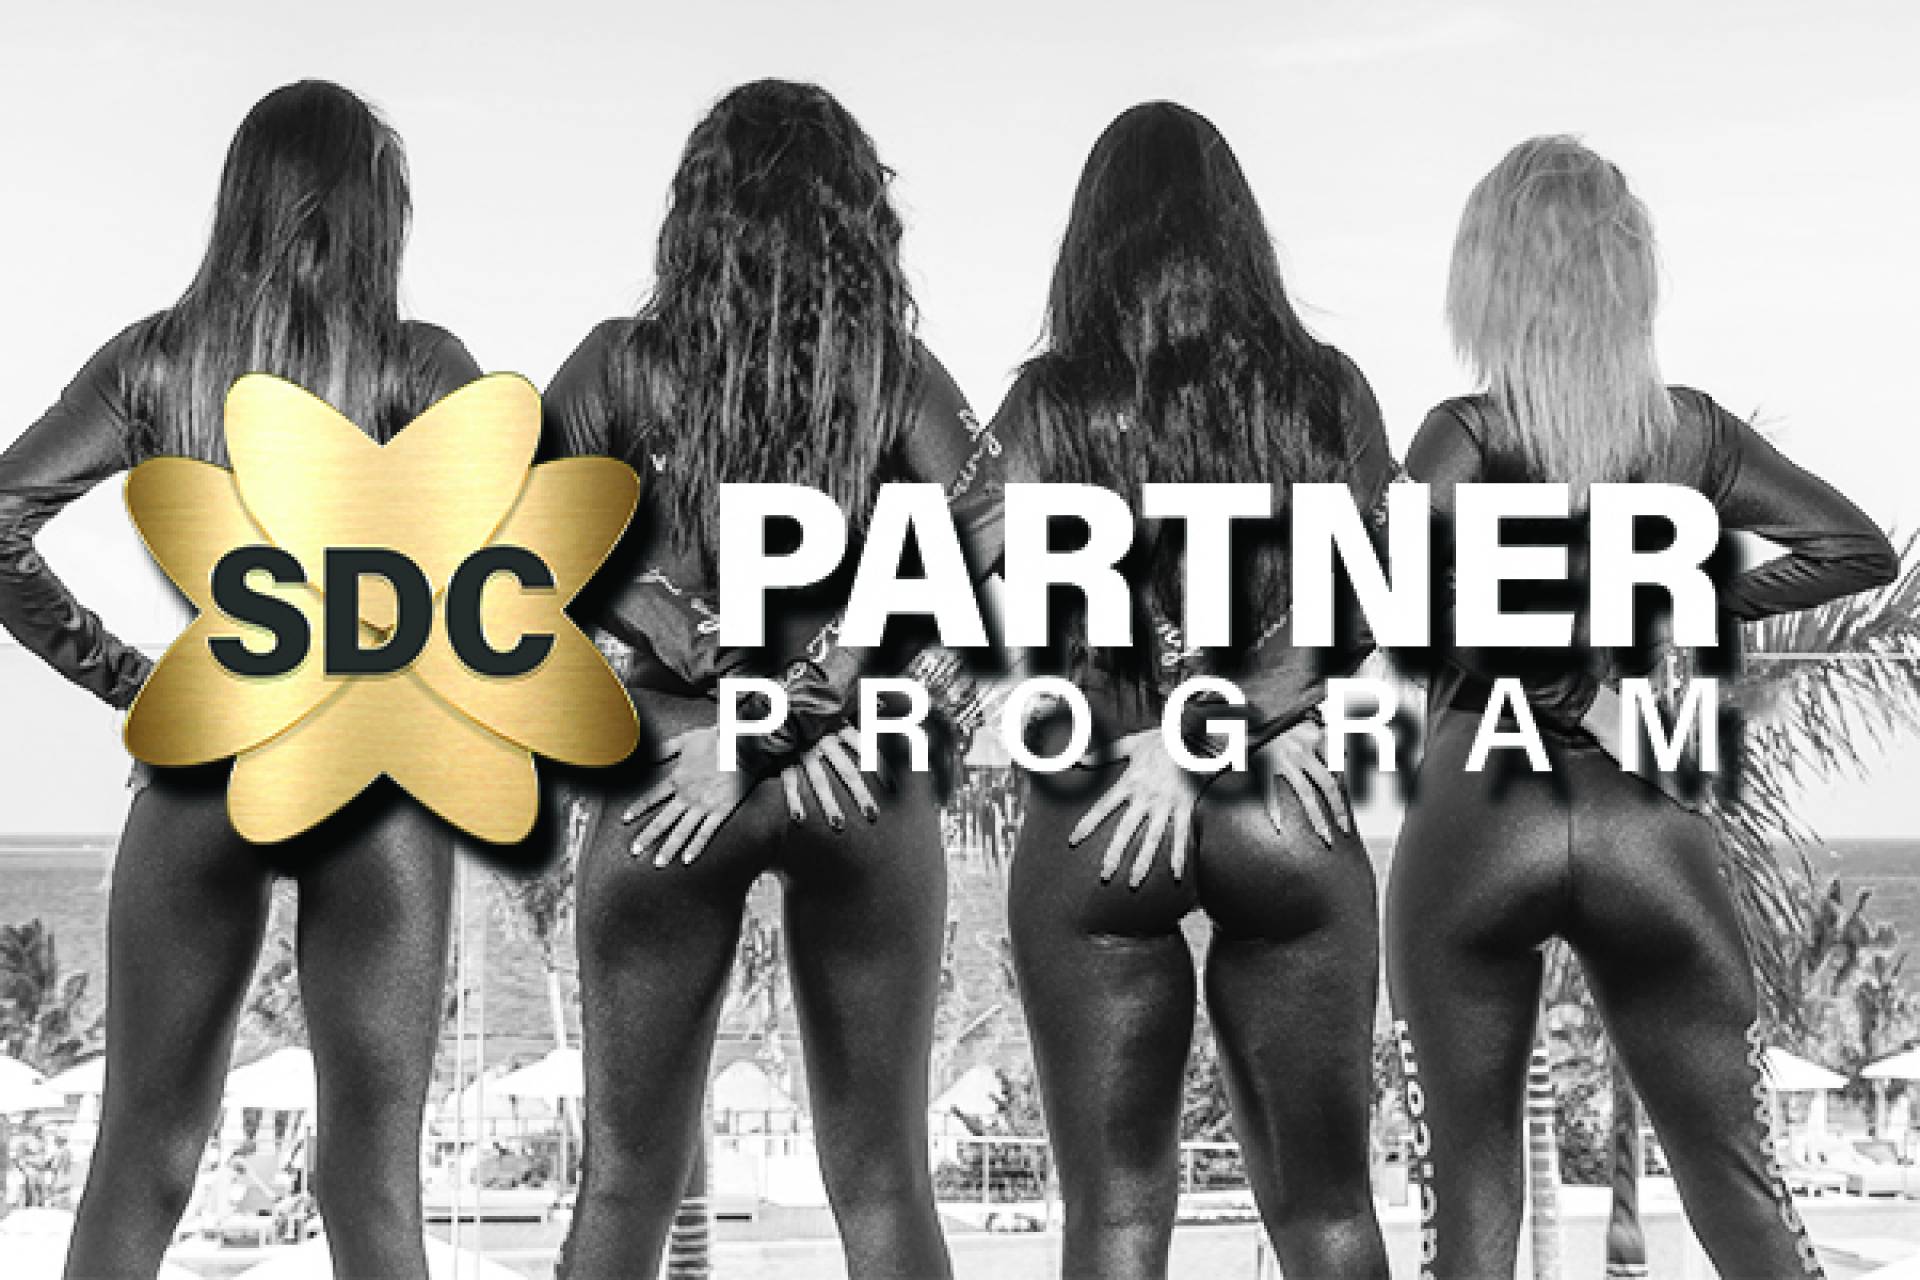 SDC Partner Program